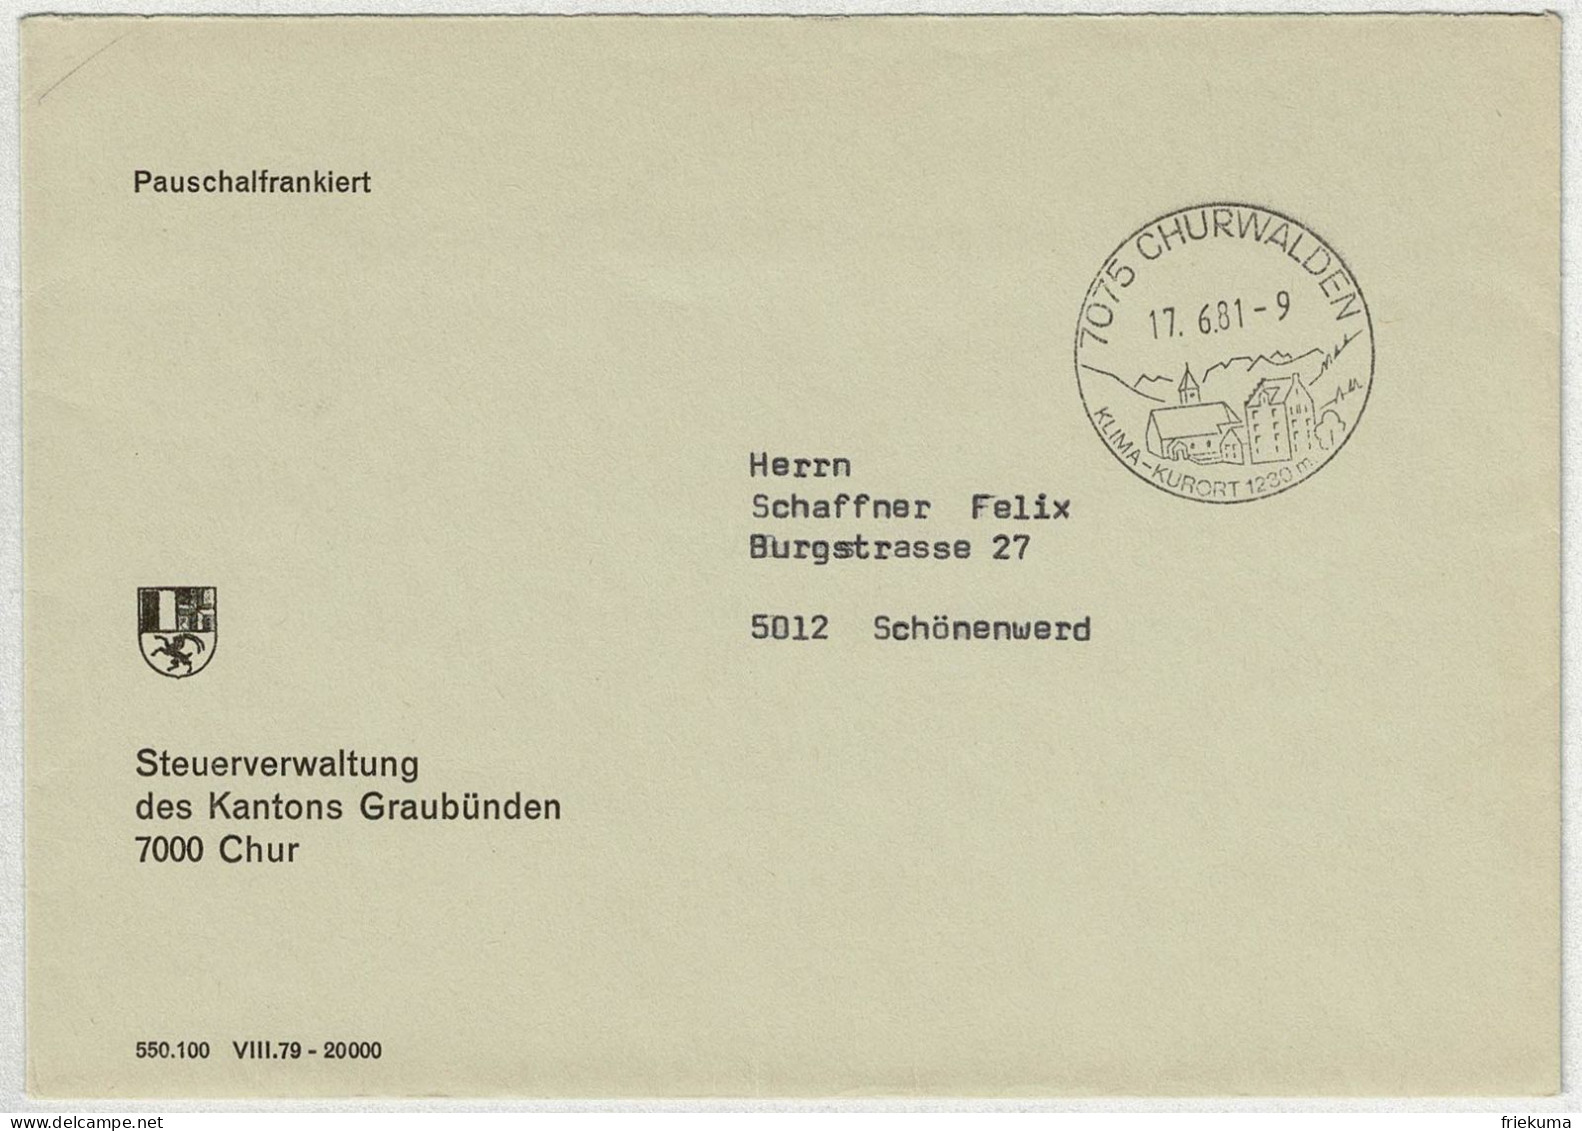 Schweiz 1981, Brief Pauschalfrankiert Churwalden - Schönenwerd - Storia Postale